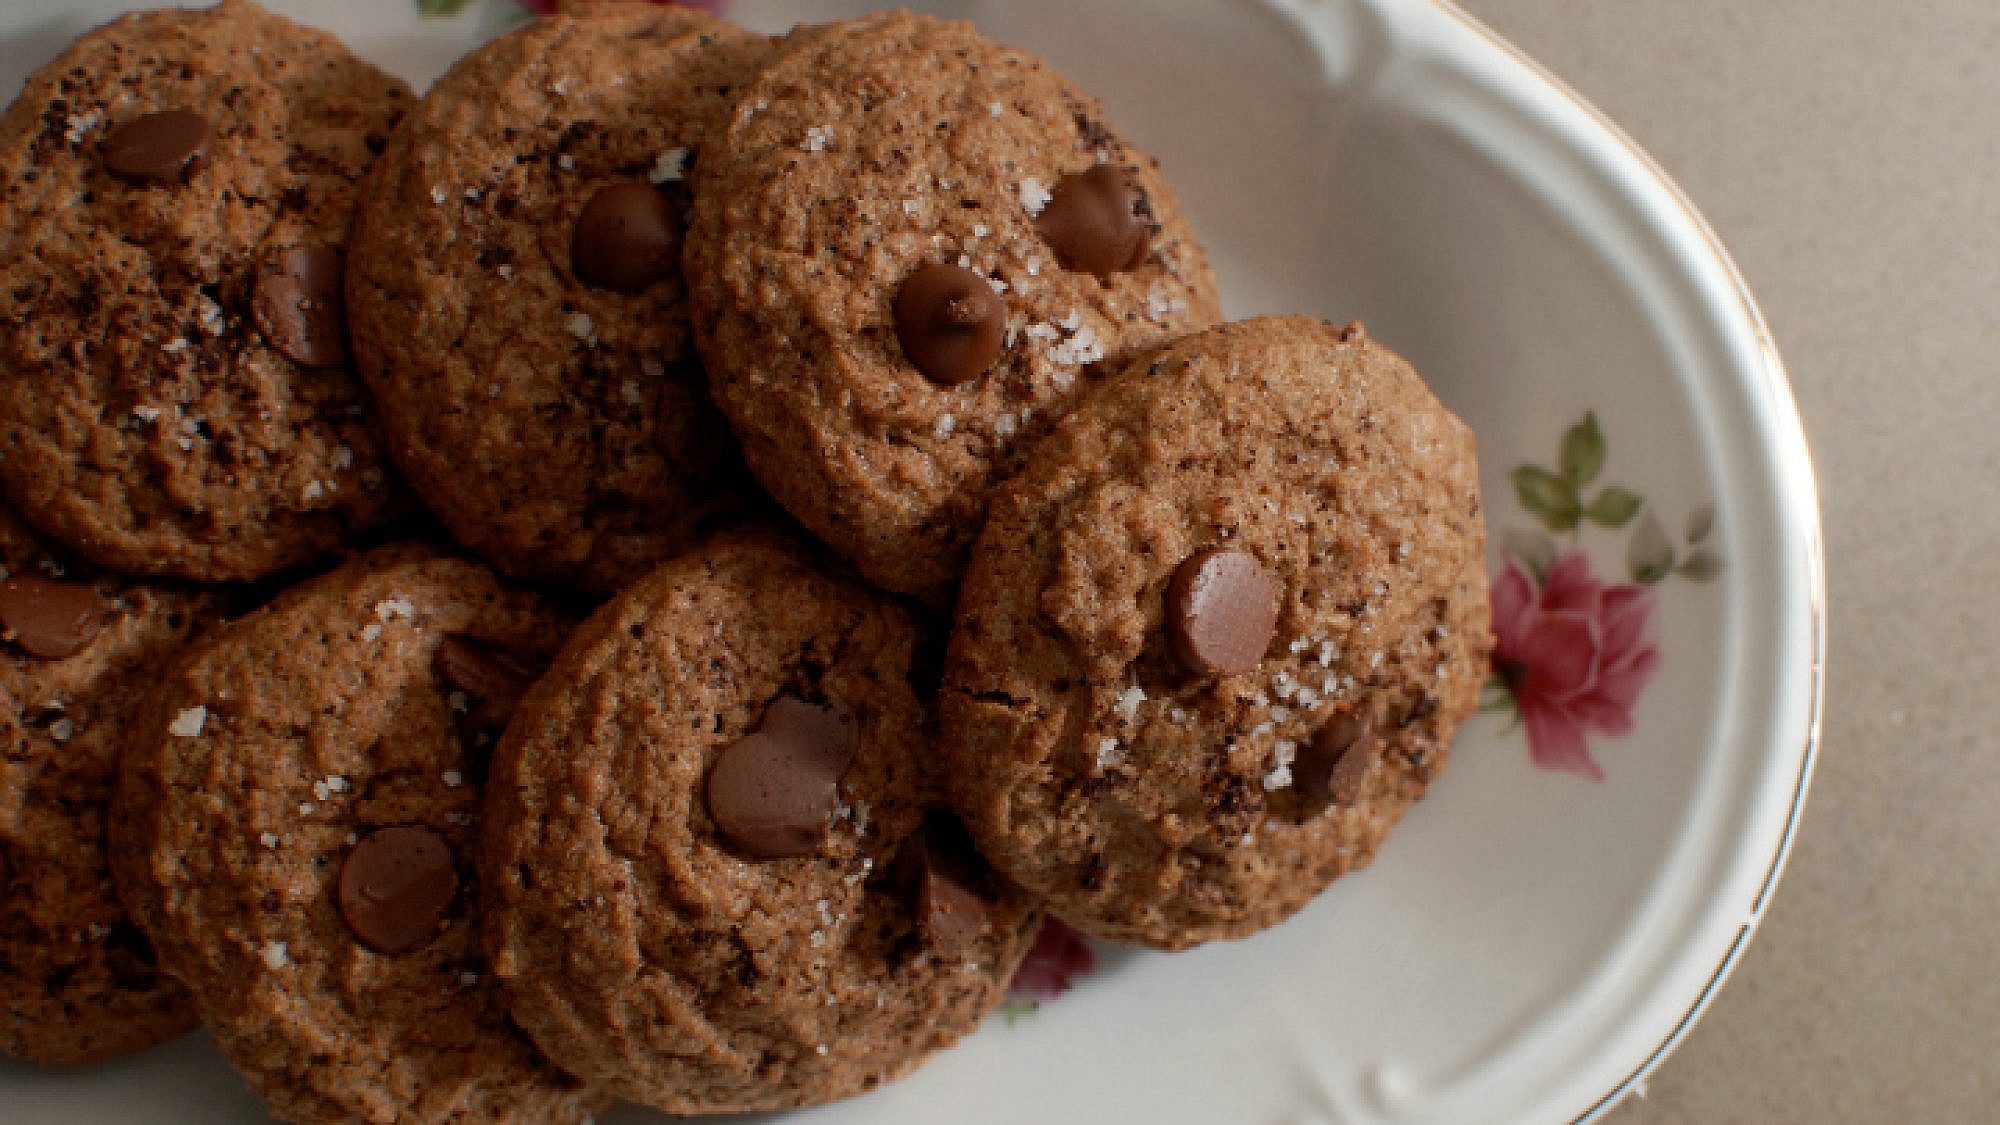 עוגיות מוקה ופצפוצי שוקולד לפסח | צילום: בלוג פצפוצים